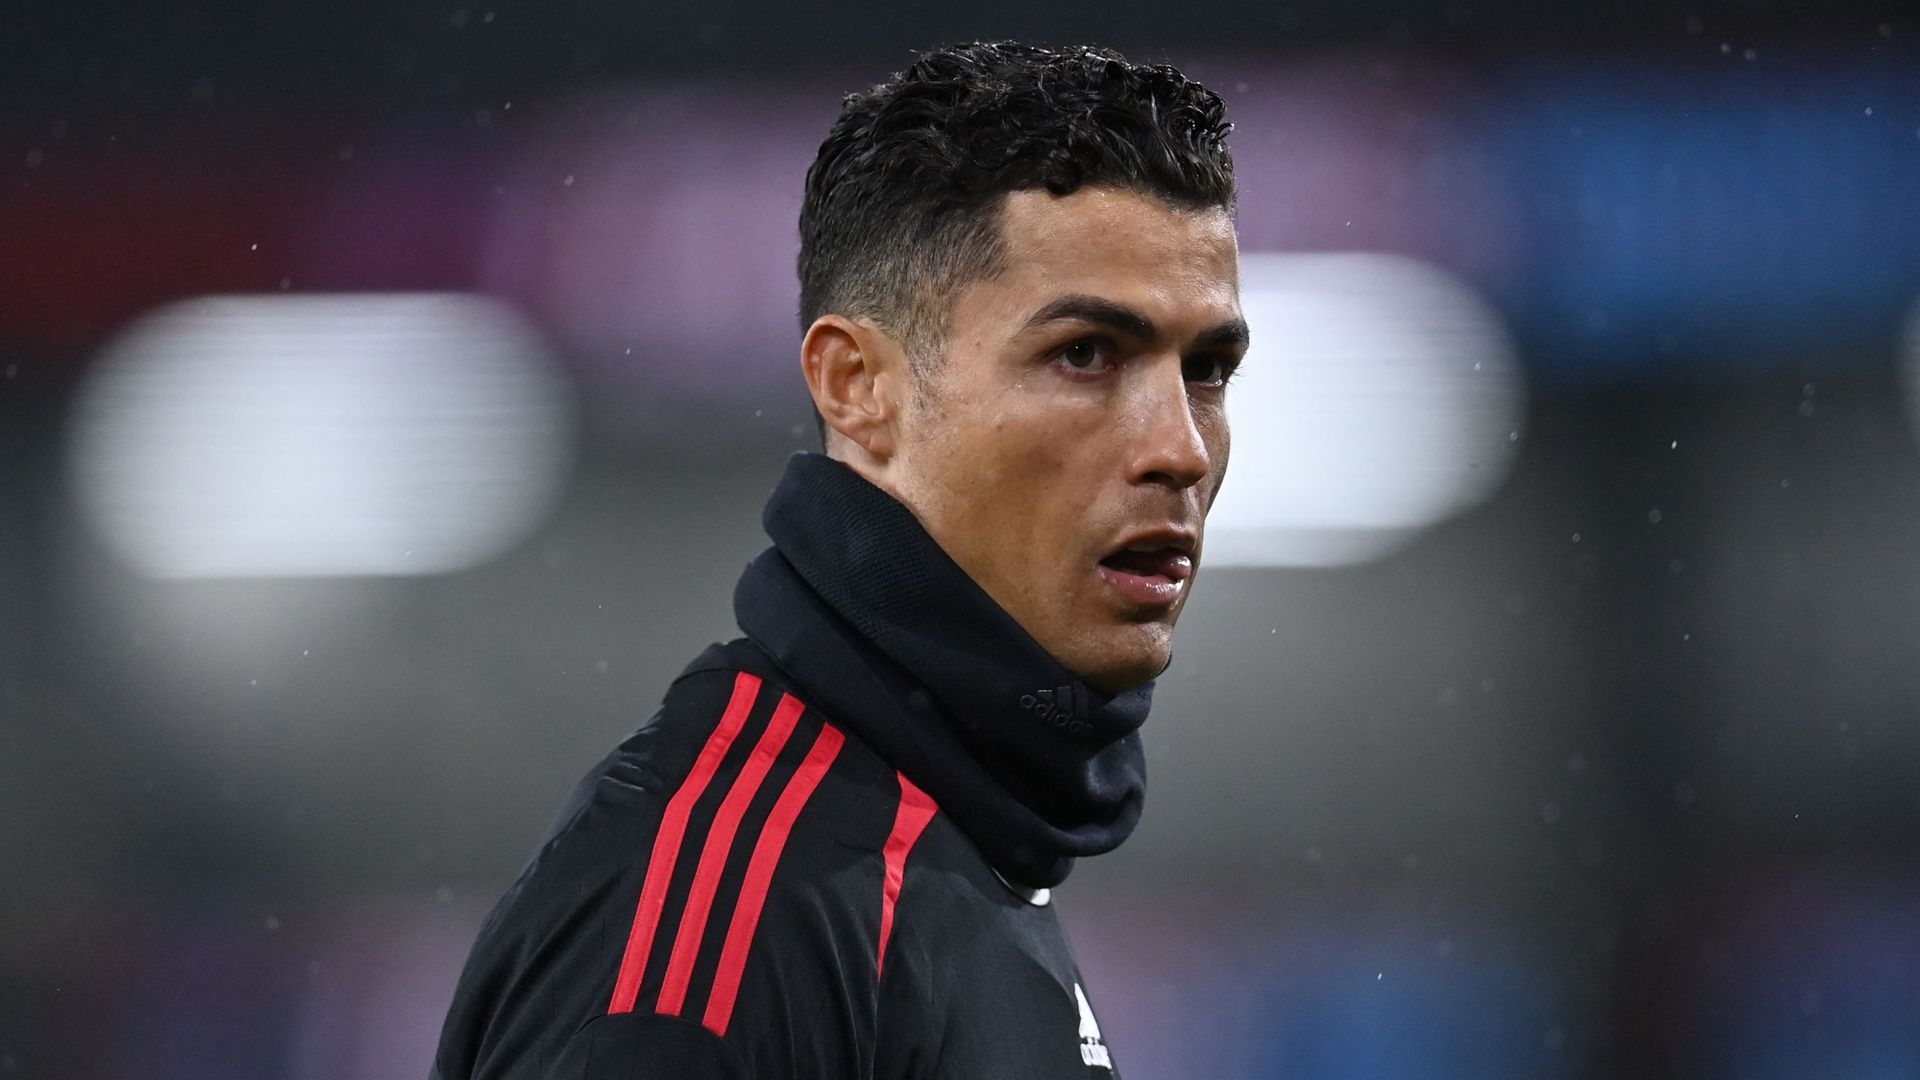 Ronaldo de retour au Sporting ? La star sort du silence et répond sur Instagram